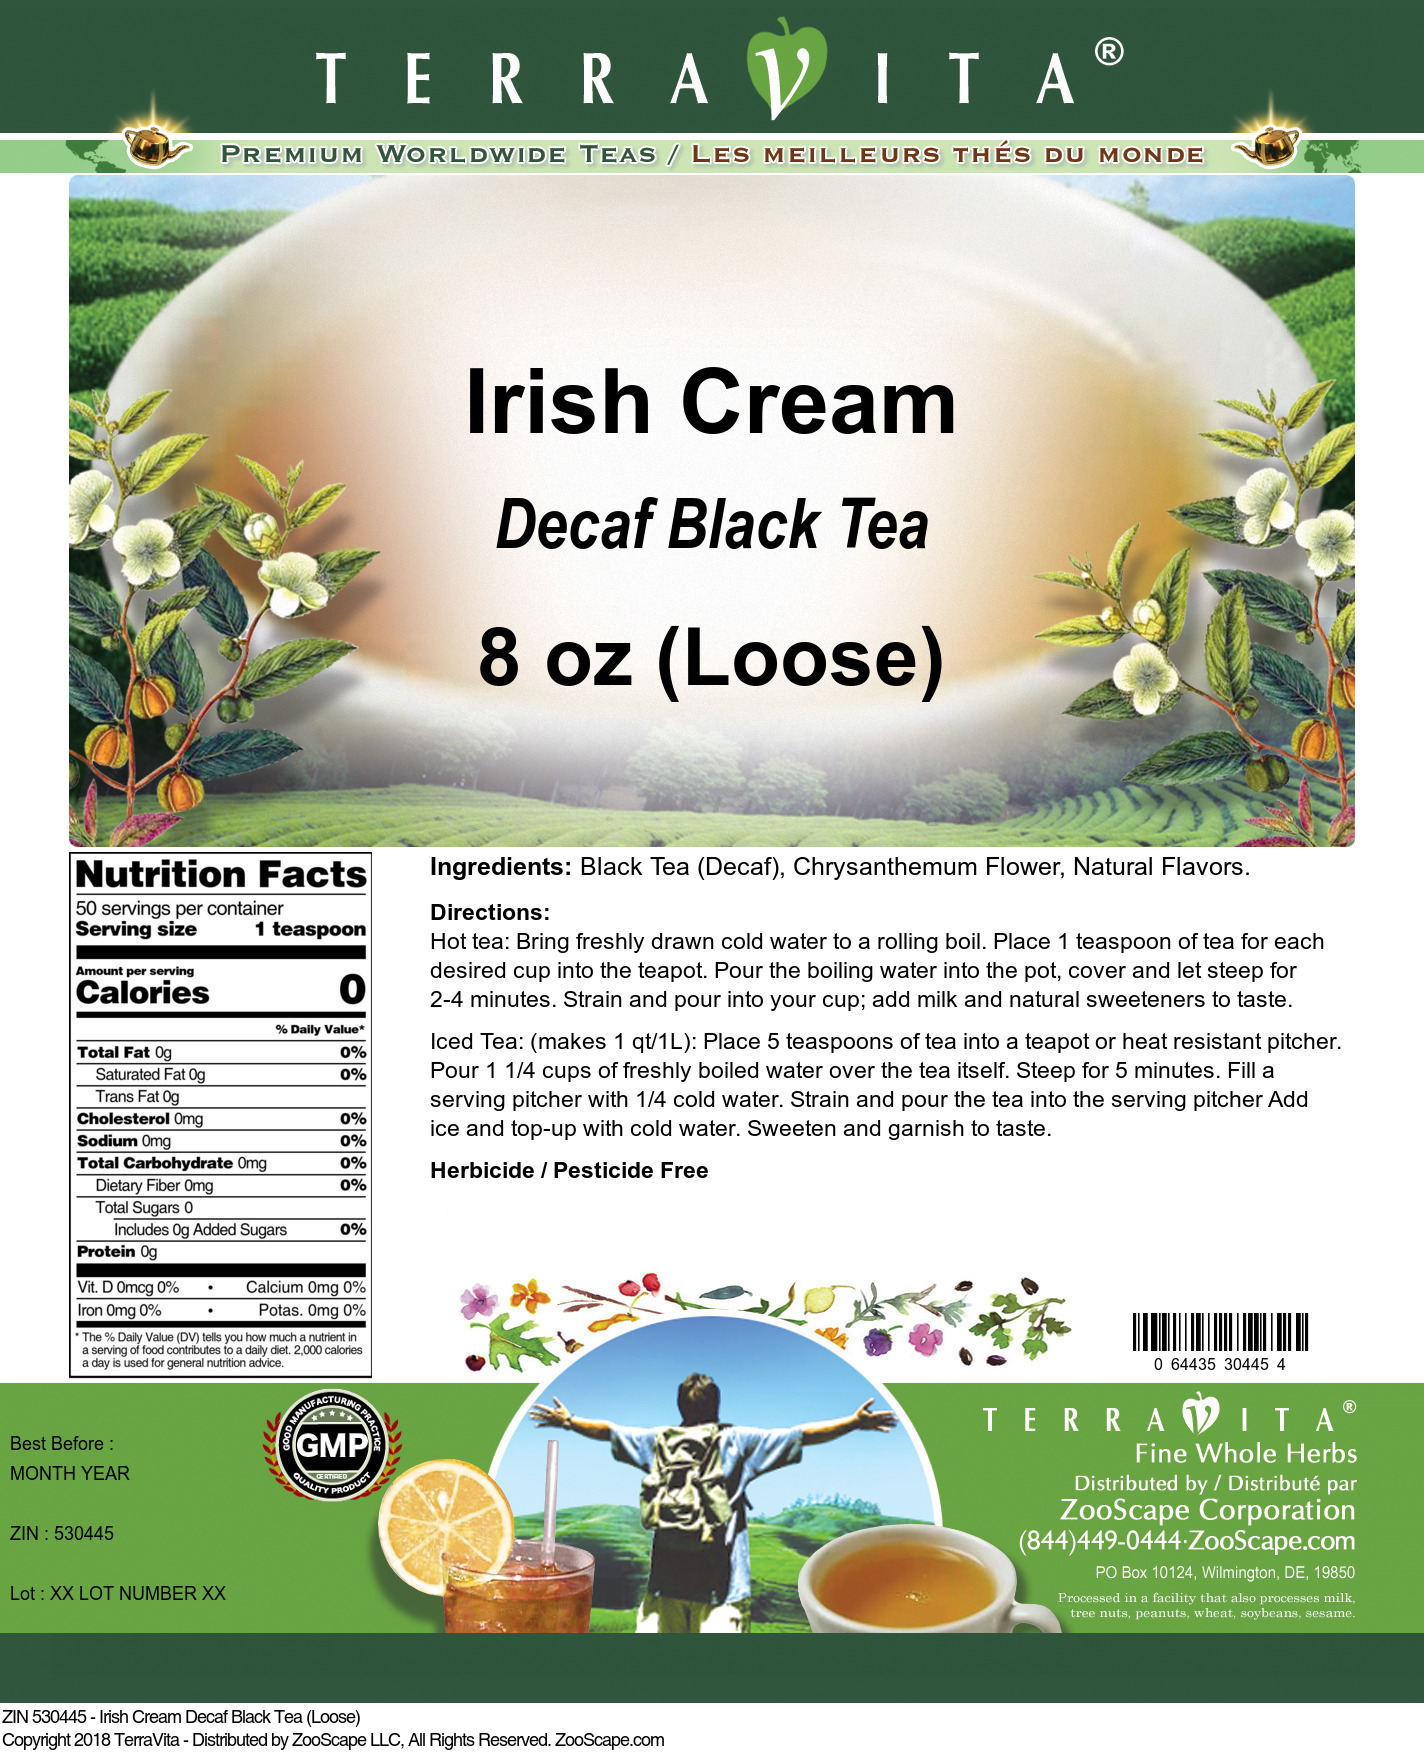 Irish Cream Decaf Black Tea (Loose) - Label